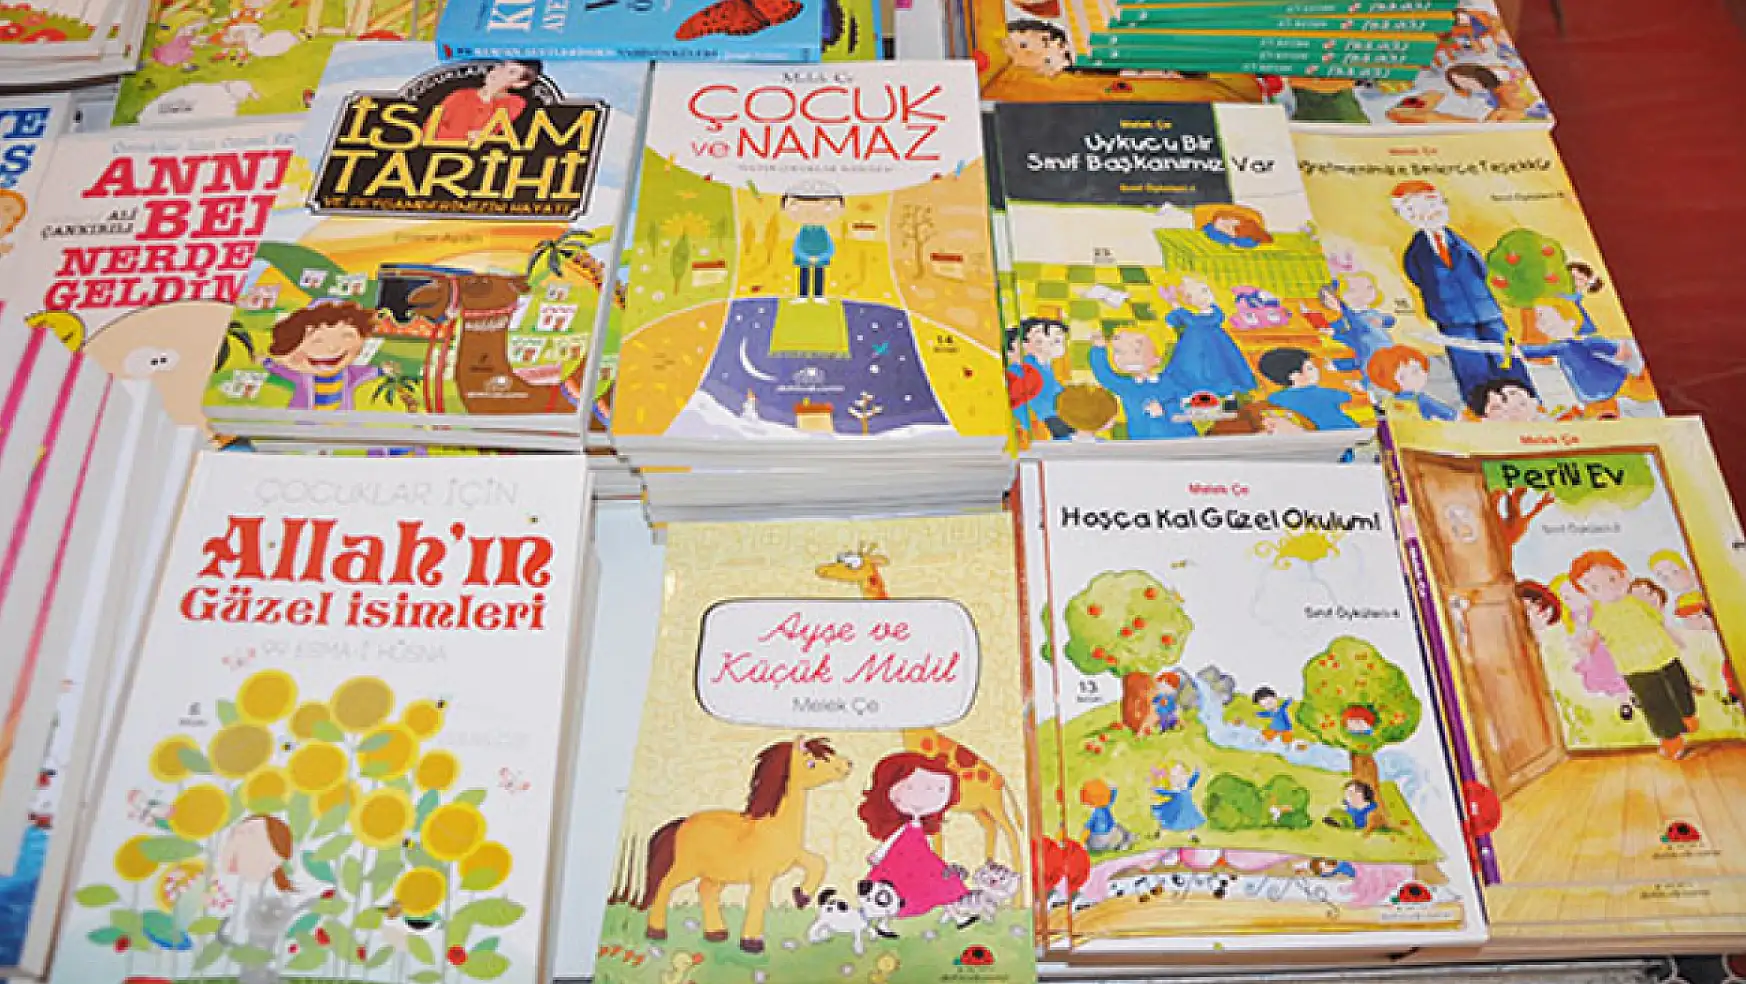 1.Van Çocuk Edebiyatı Fuarı açılıyor